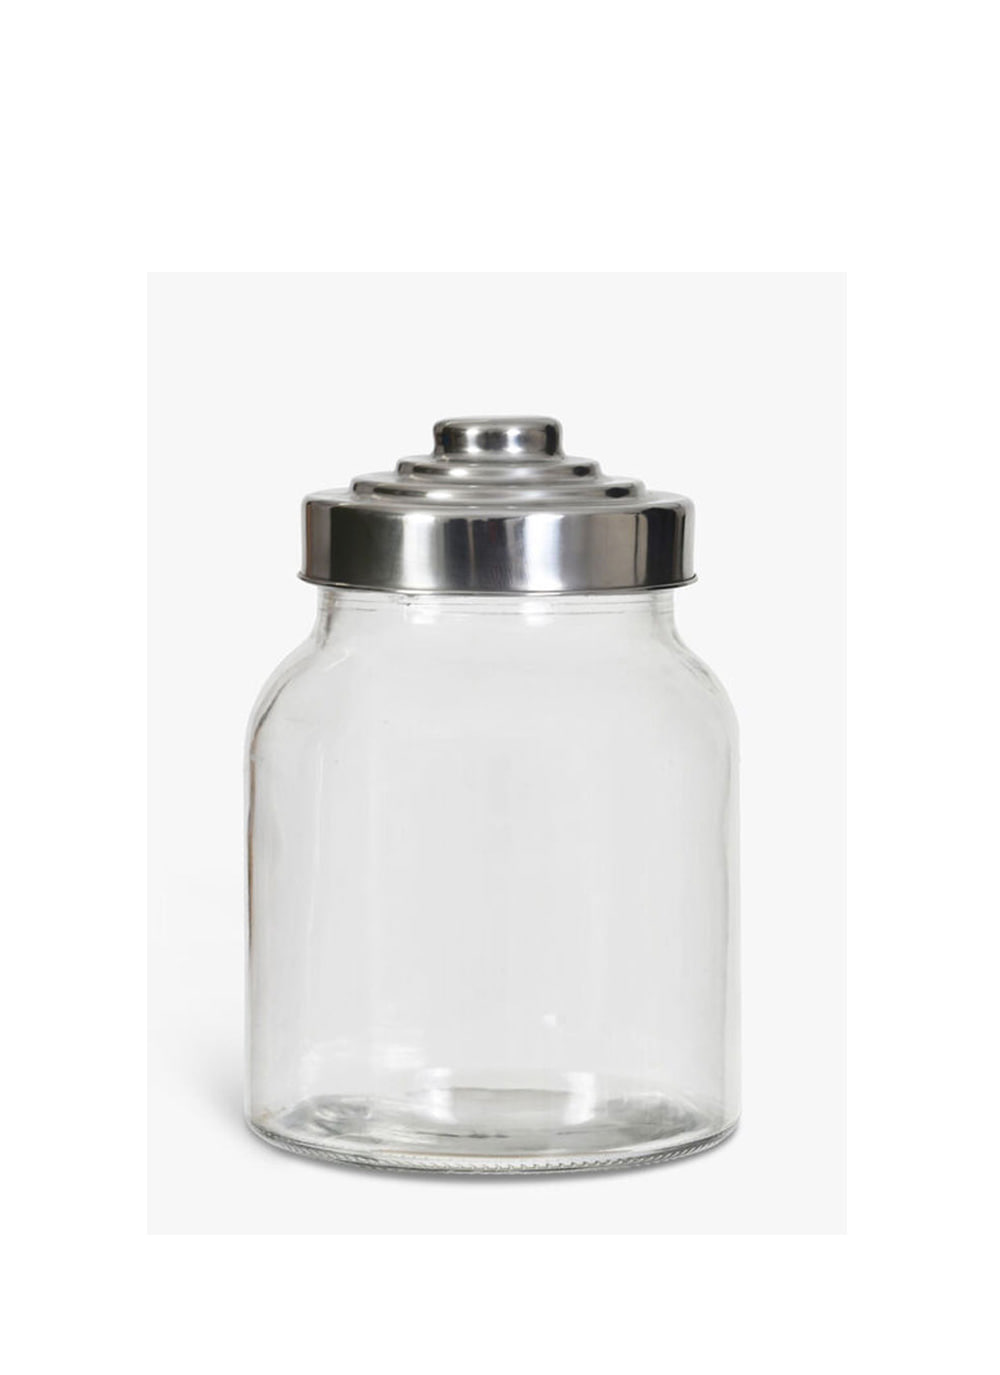 Glass Storage Jar with Screw Lid